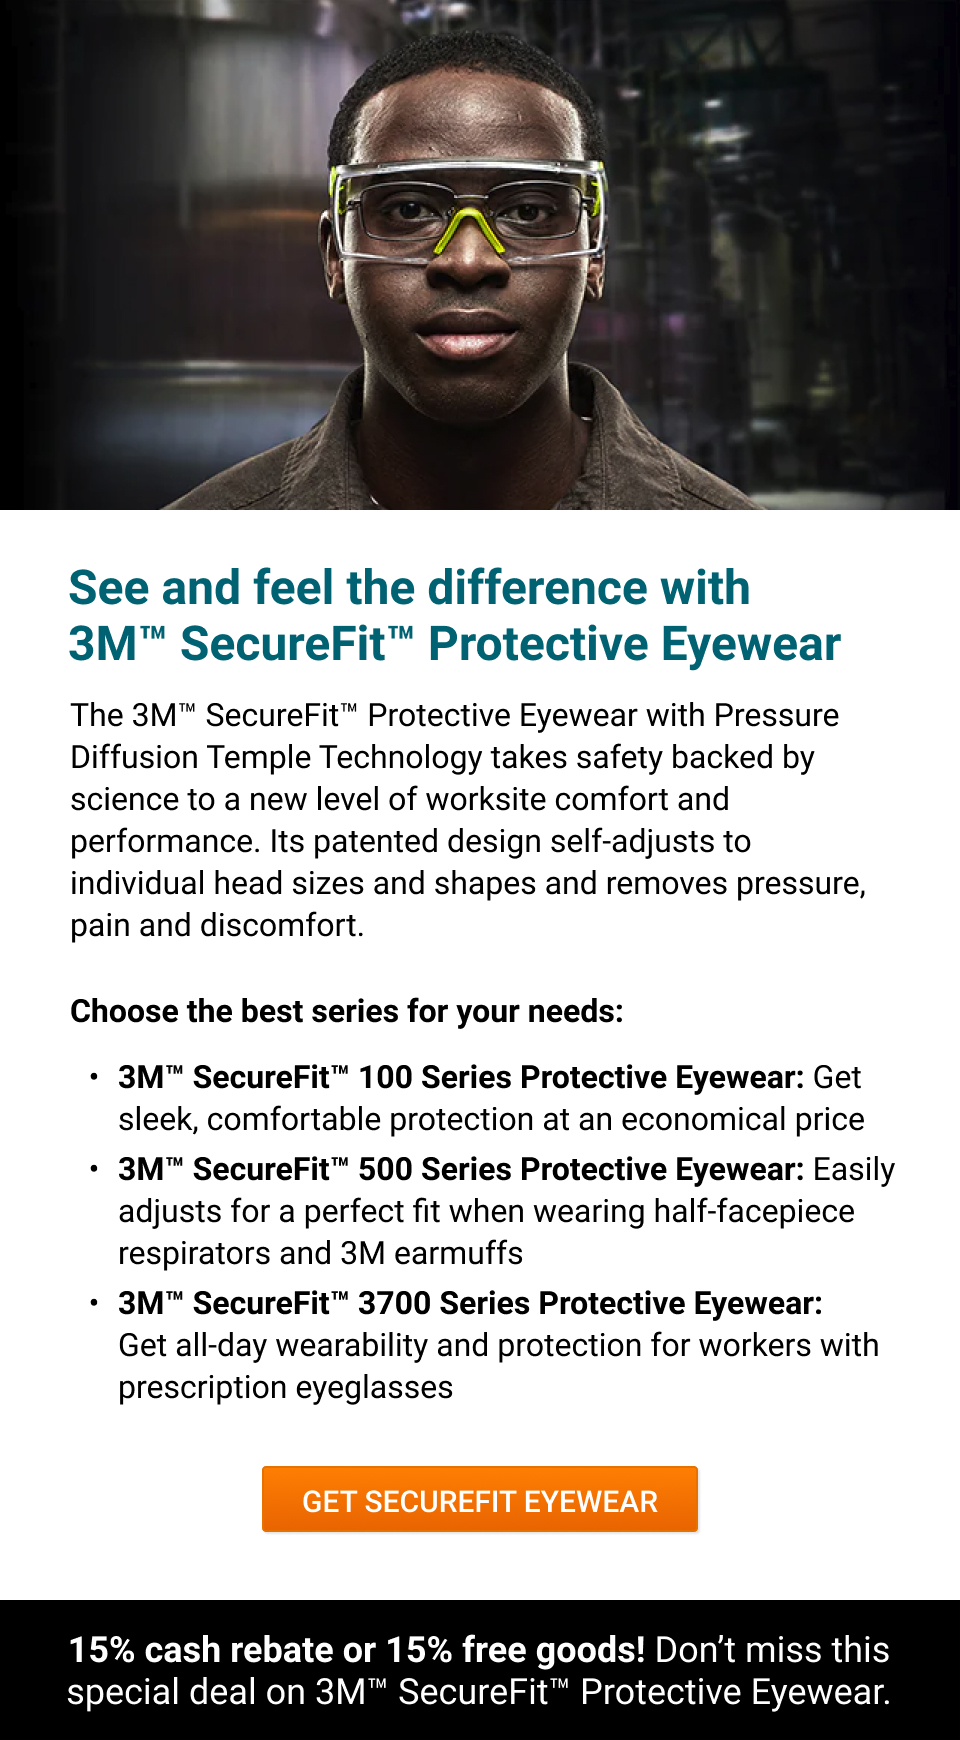 A man wears new 3M SecureFit Protective Eyewear.